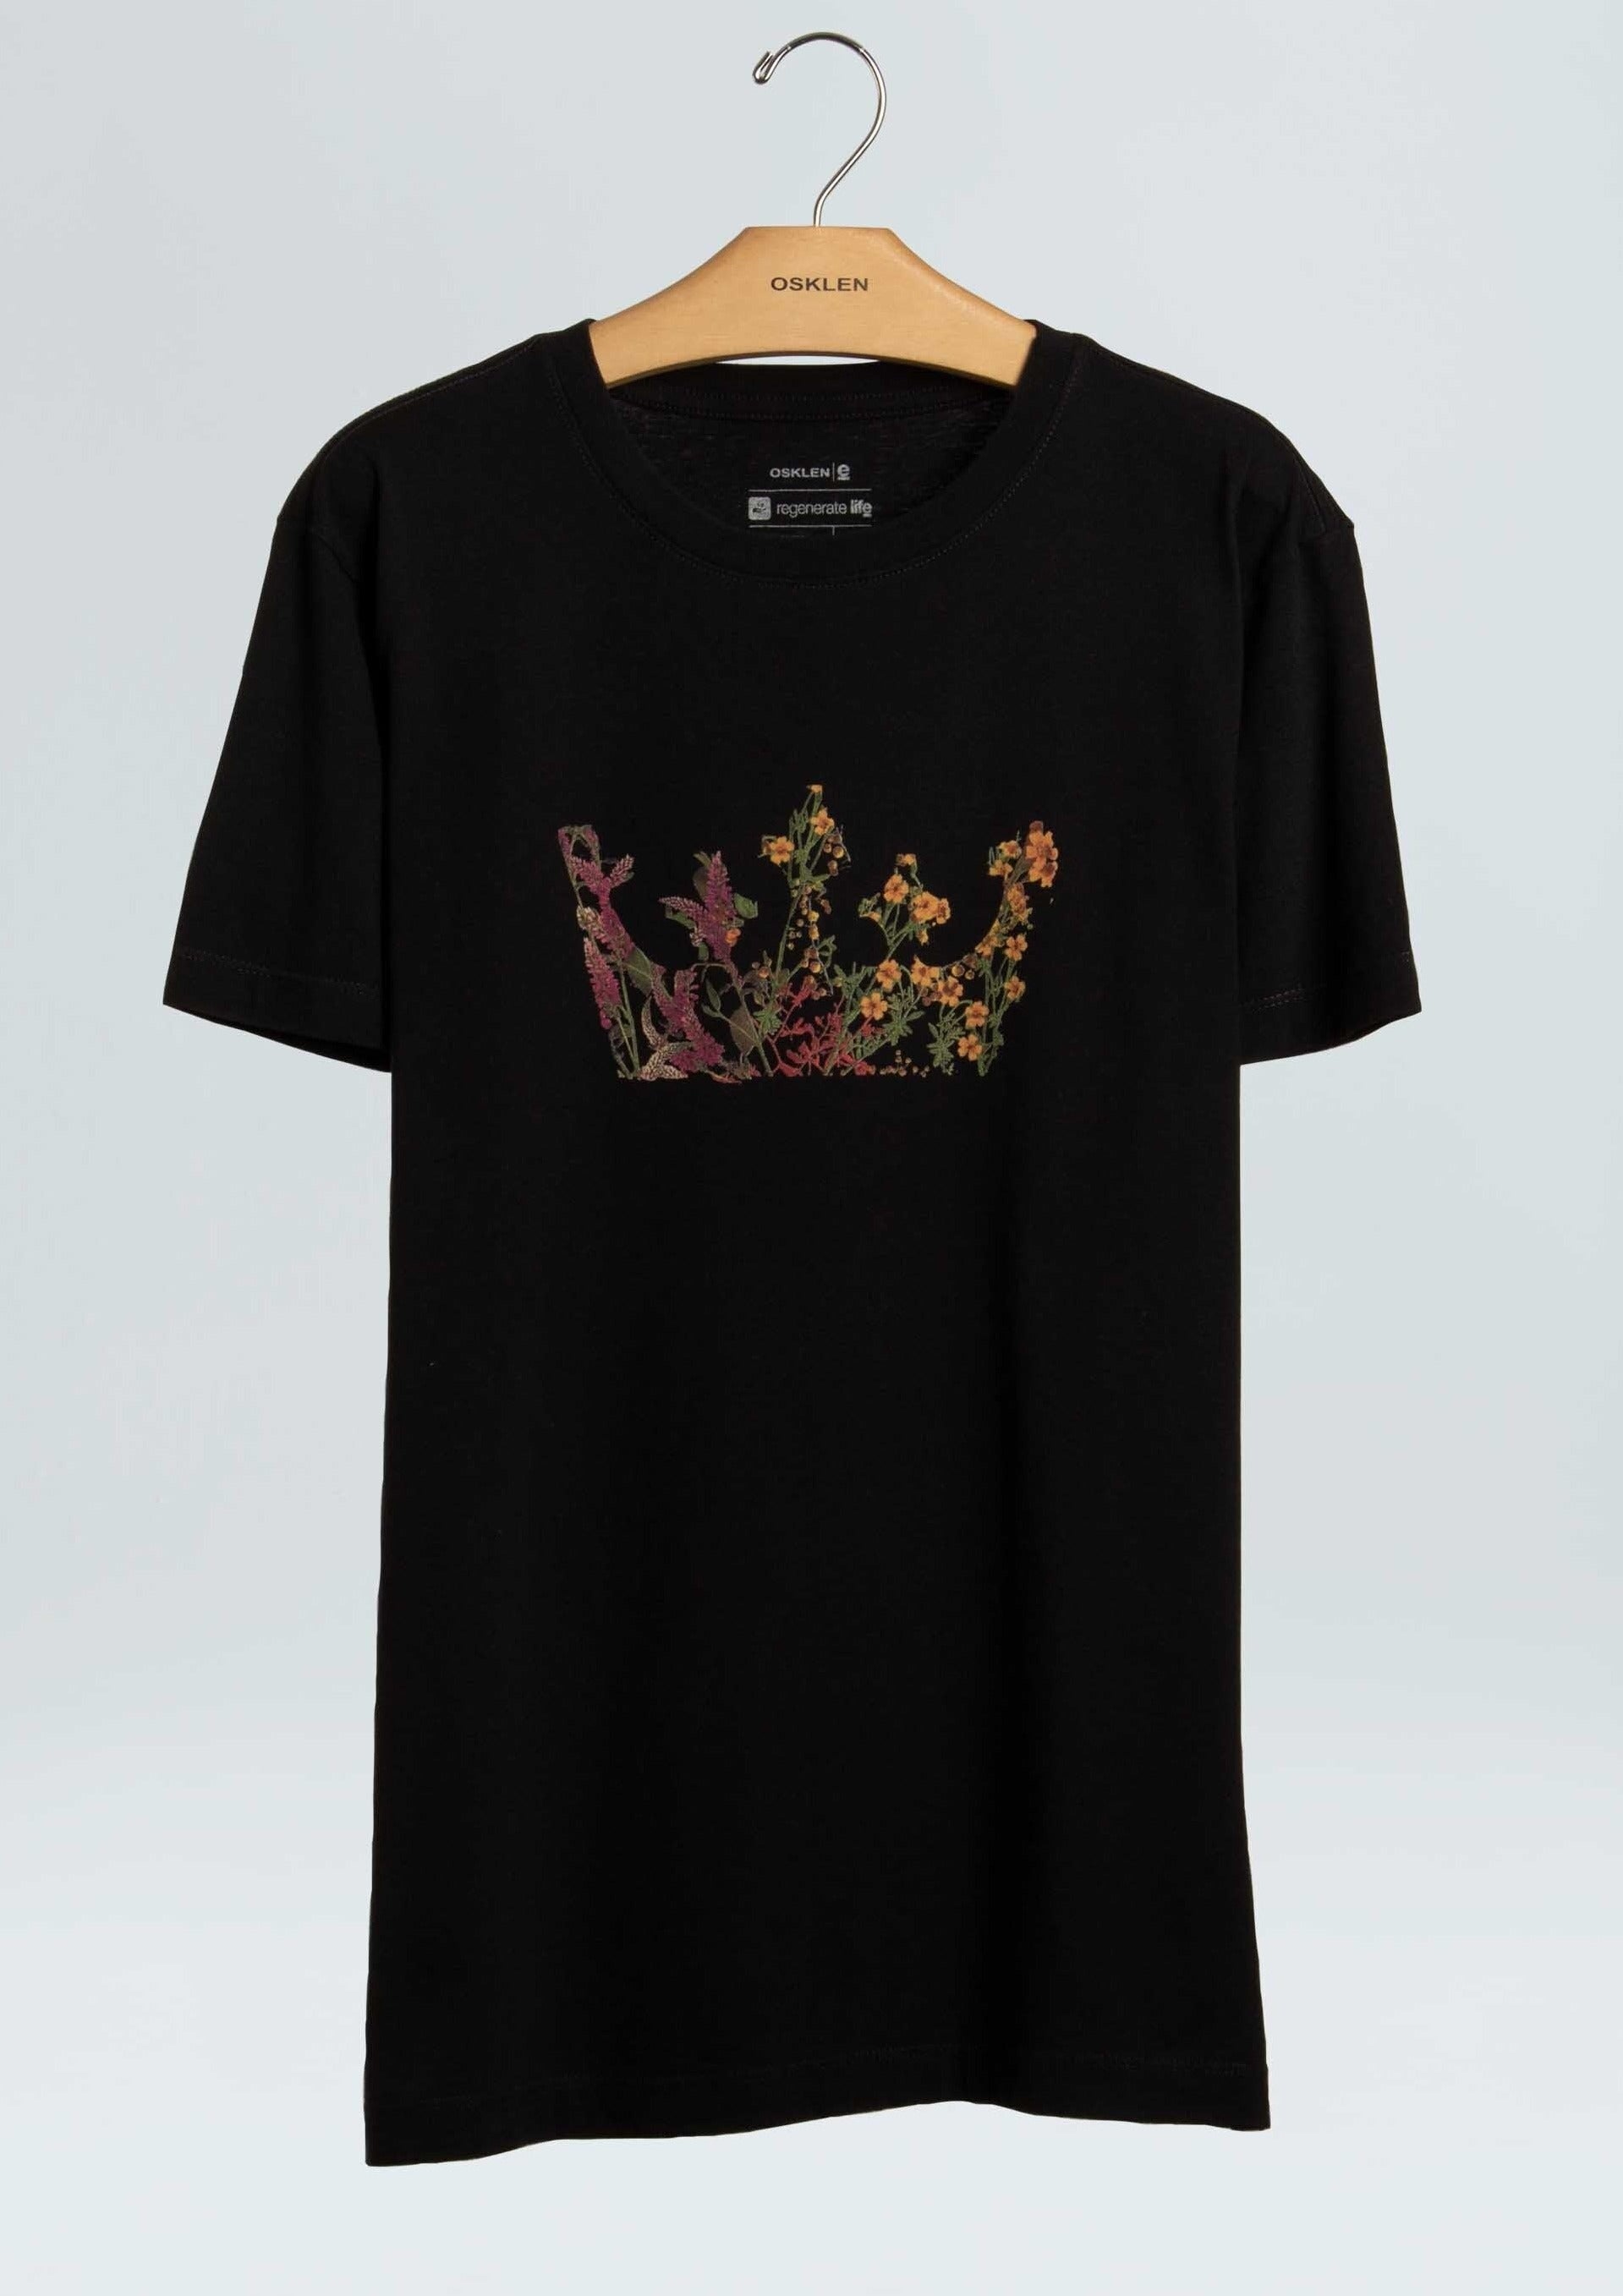 Osklen-T-Shirt Vintage Flower Crown-Justbrazil